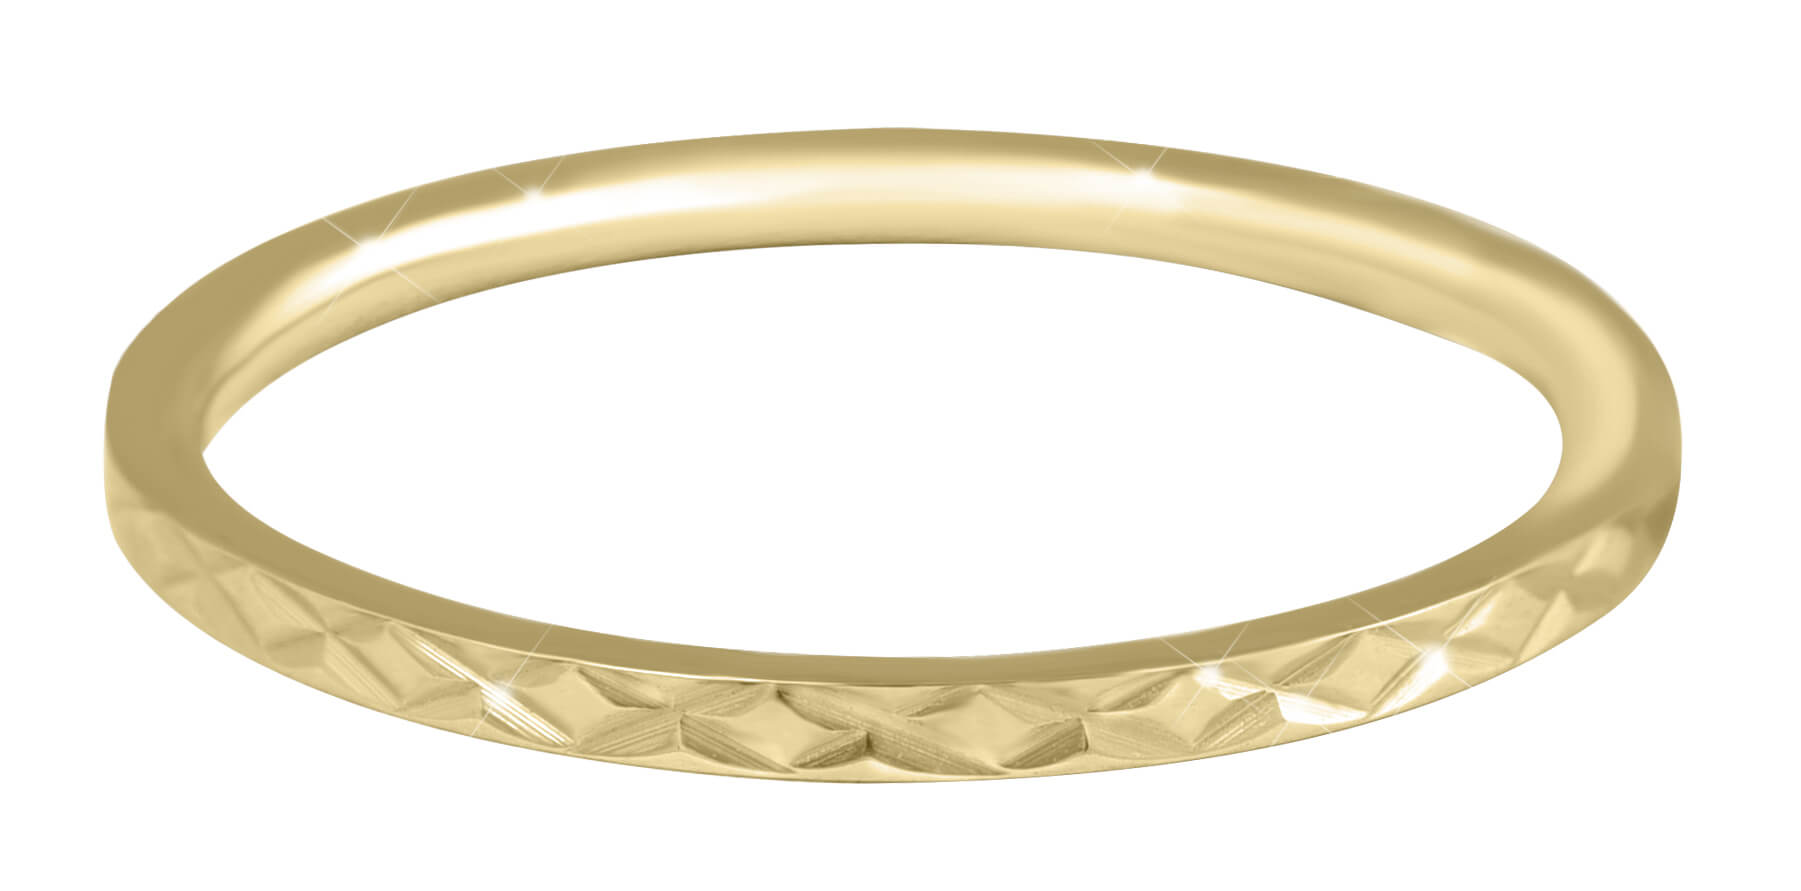 Troli Pozlacený minimalistický prsten z oceli s jemným vzorem Gold 49 mm